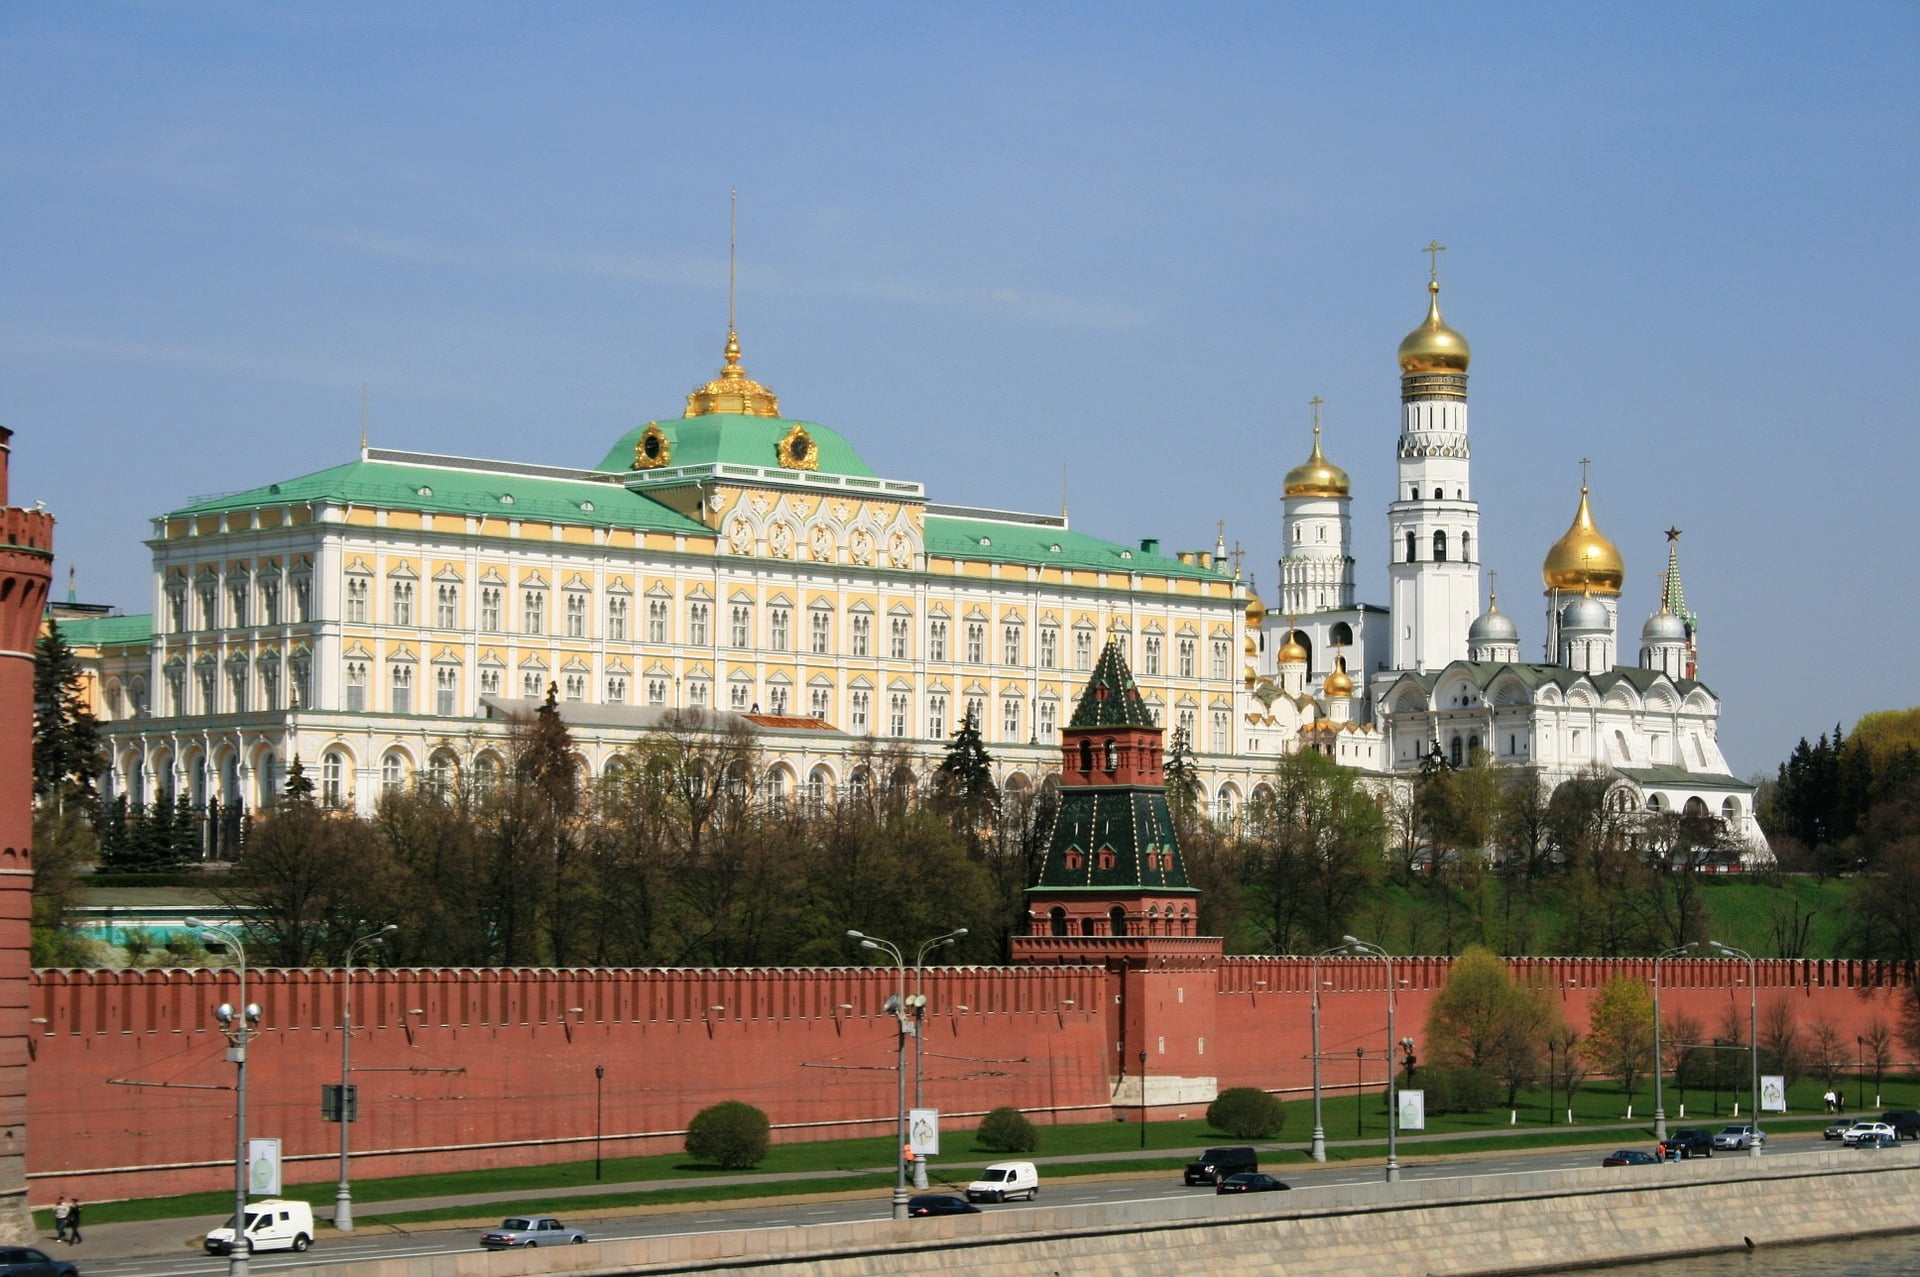 เที่ยวรัสเซีย มอสโคว์ พระราชวังเครมลิน Kremlin